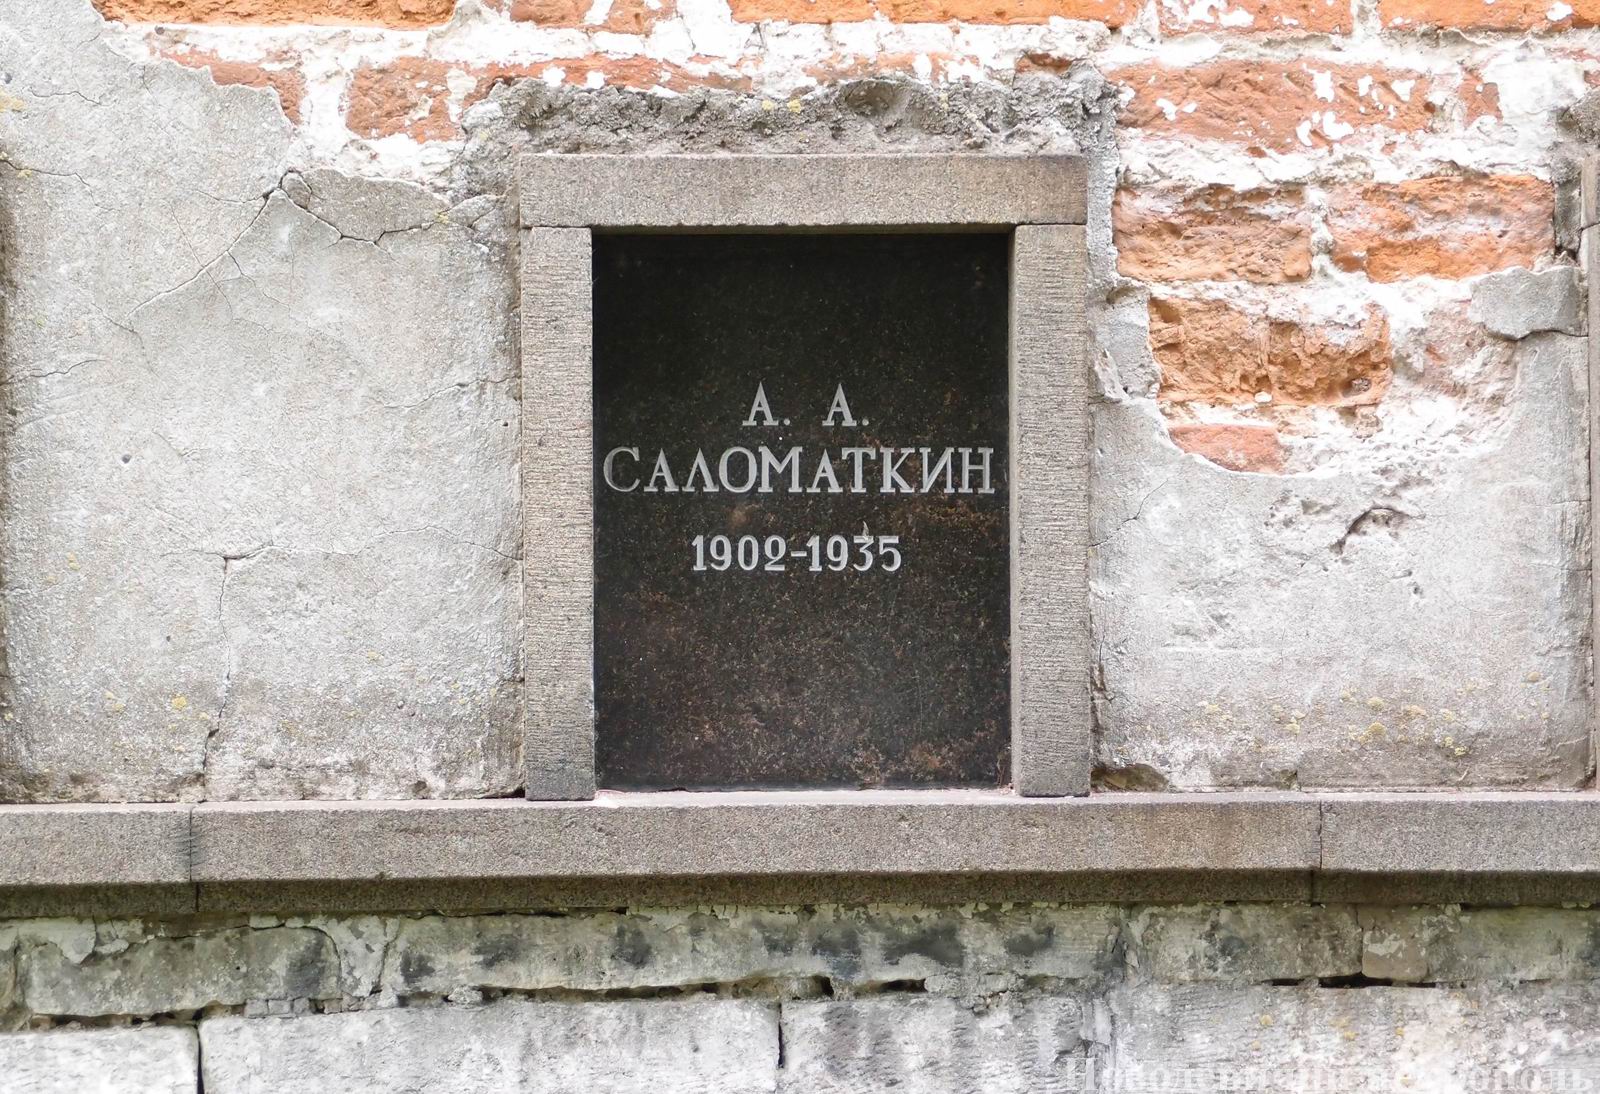 Плита на нише Саломаткина А.А. (1902-1935), на Новодевичьем кладбище (колумбарий [3]-19). Нажмите левую кнопку мыши, чтобы увидеть общий вид секции.